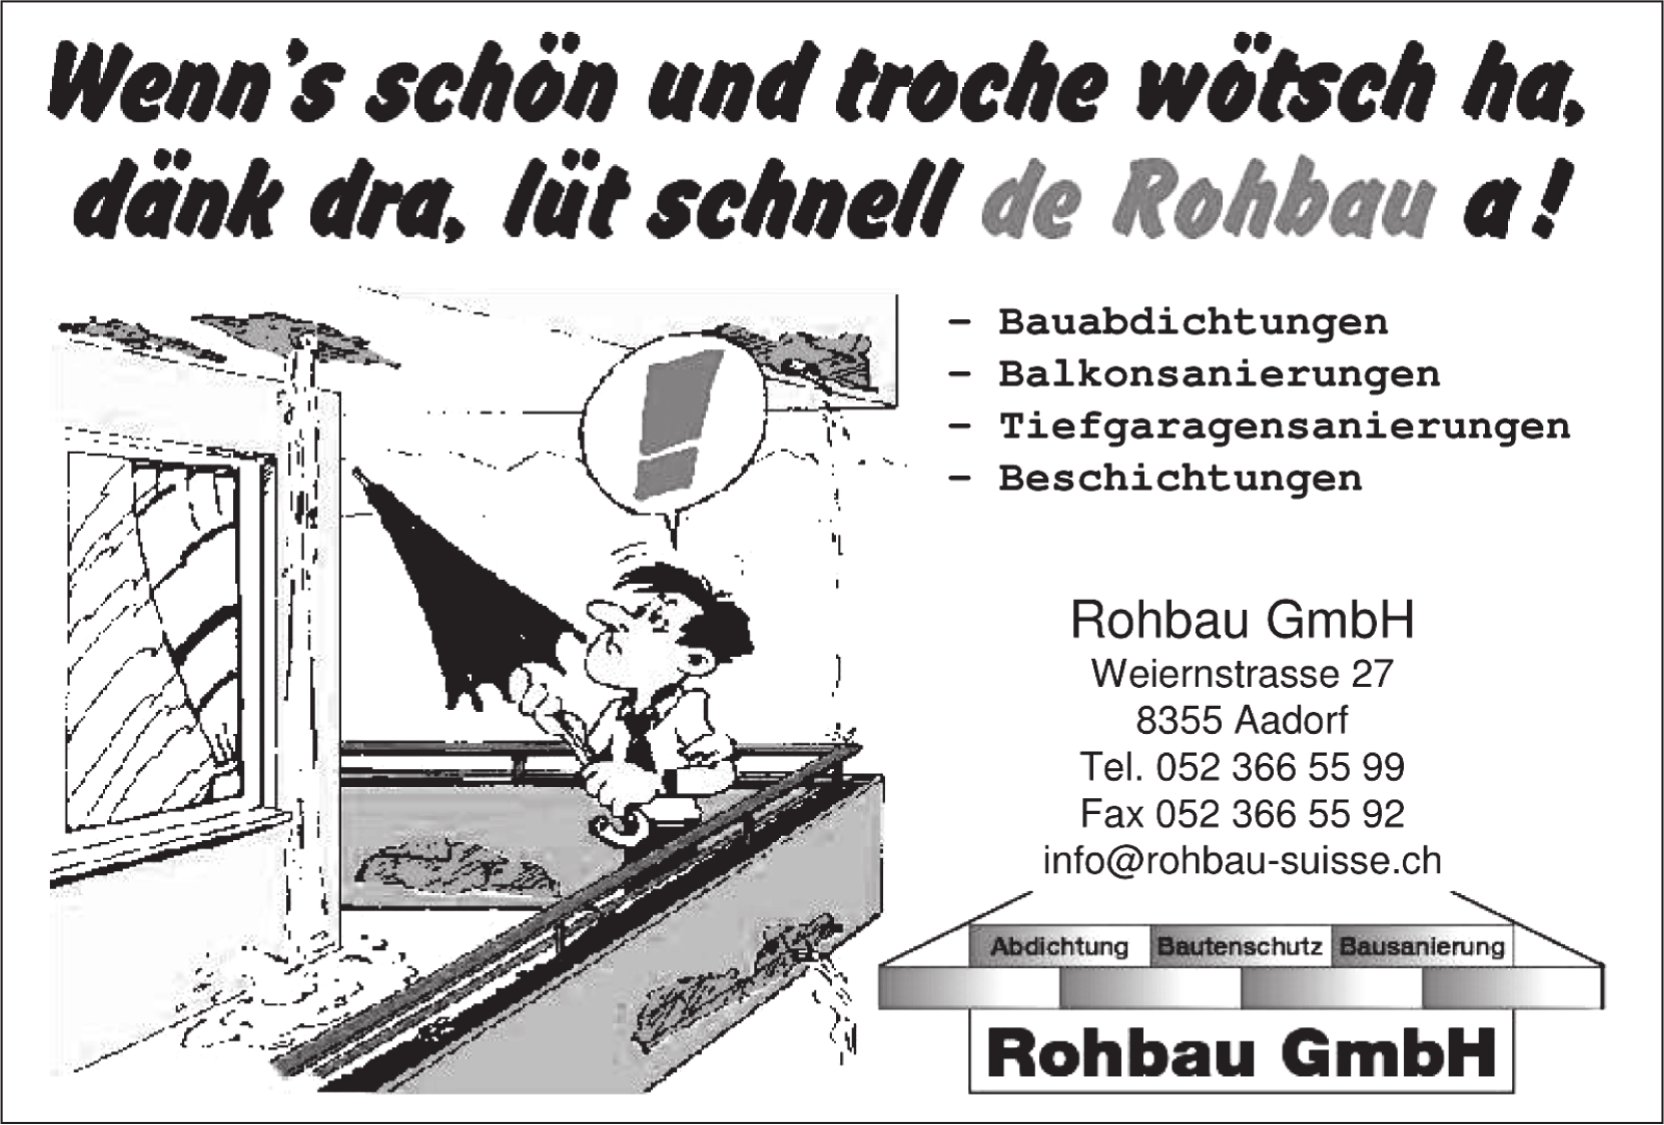 Rohbau GmbH, Aadorf - Wenn's schön und troche wötsch ha, dänk dra, Iüt schnell de Rohbau a!